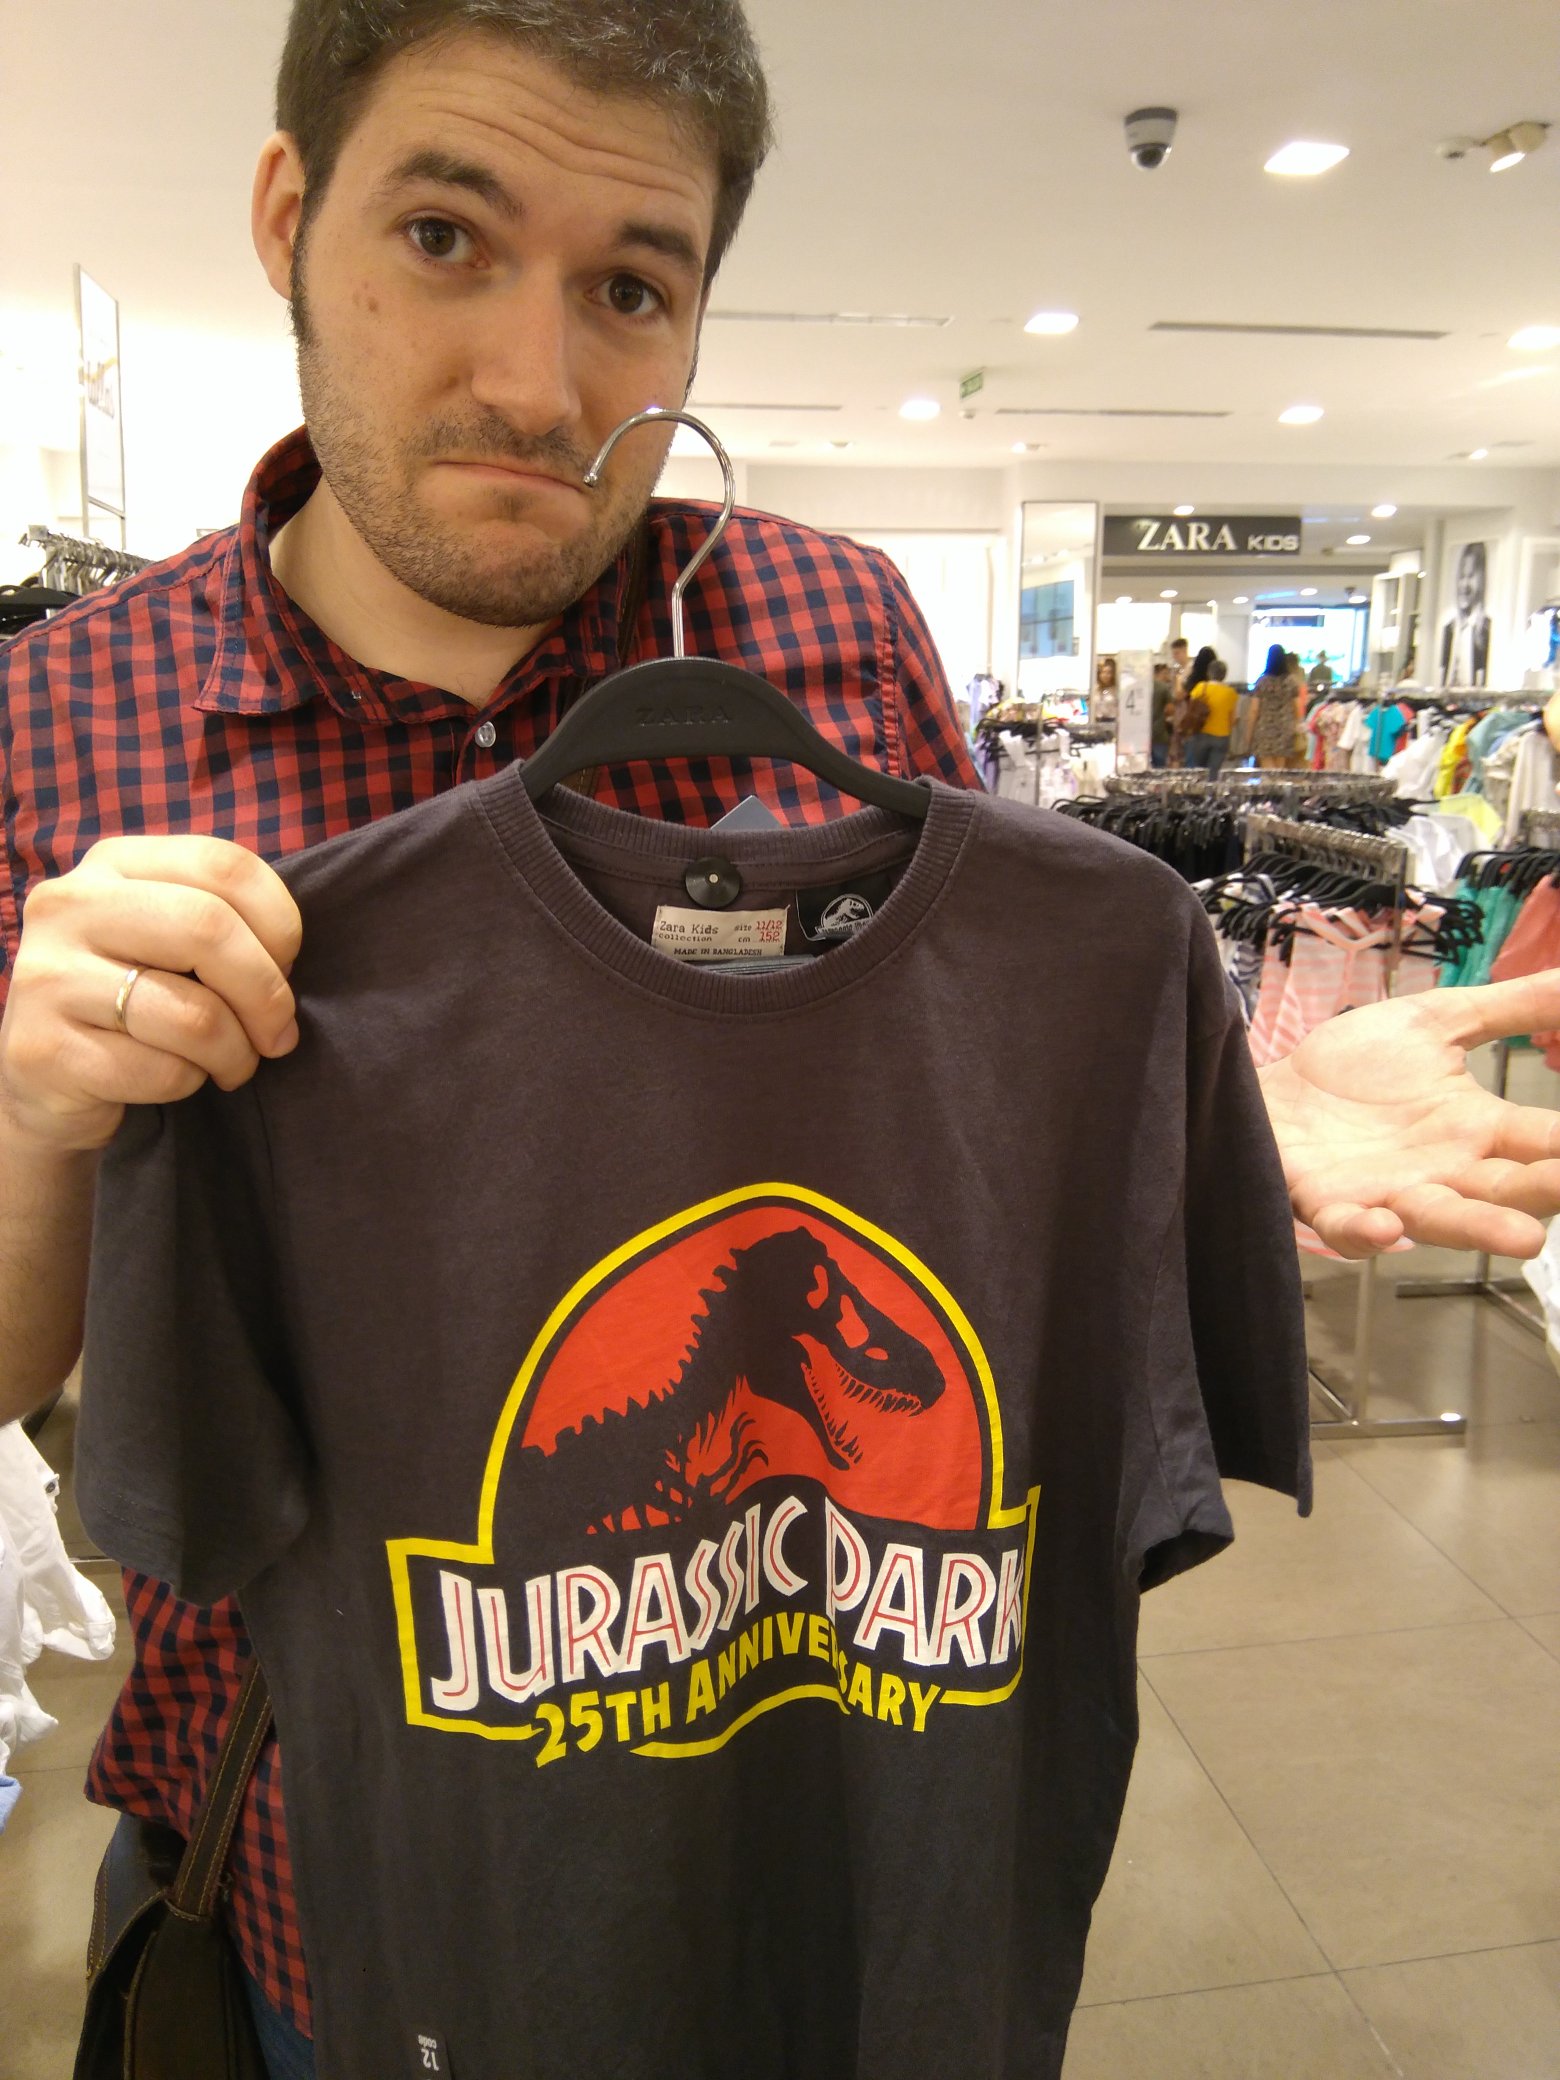 ZARA på Twitter: "@Jon_Valera @Dino_Busters @DinopolisTeruel @Hispanosaurus @YofuiaEGB @ColectivoCroma @Museojurasico @ILopezMunoz @El_Pakozoico @pakozoic @JurassicWorld_4 Gracias por tu respuesta, Jon. Por el la camiseta con el logo que nos ...